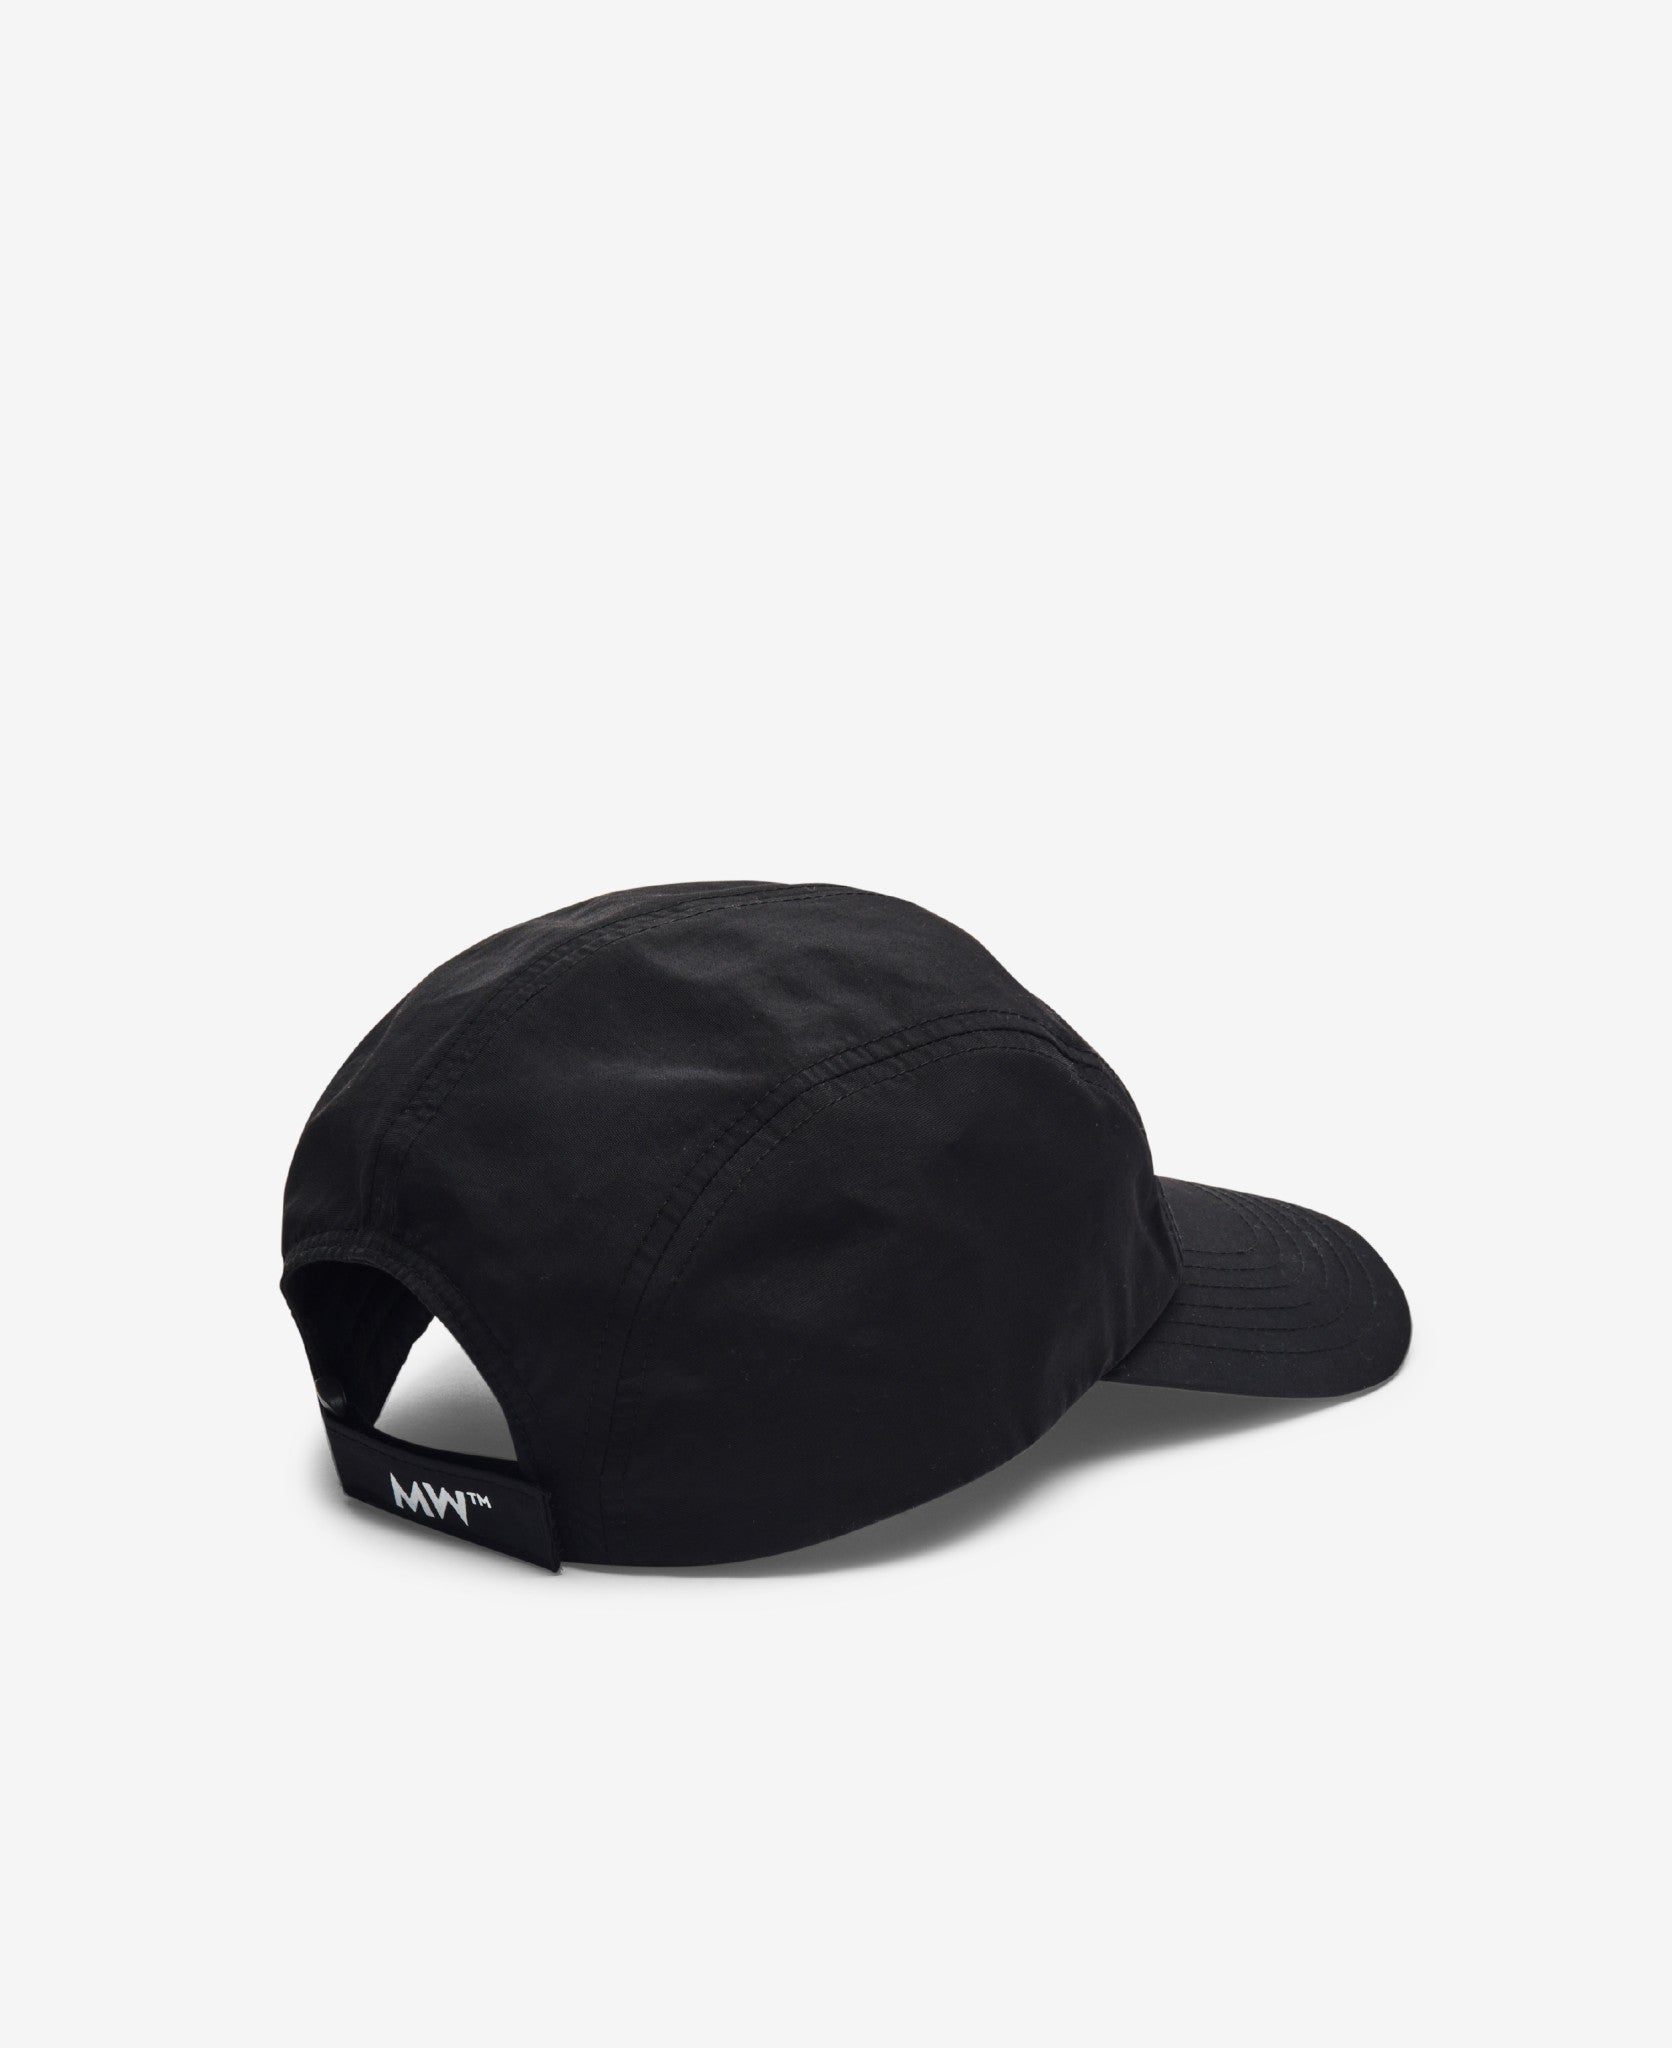 CAP1067 - Black